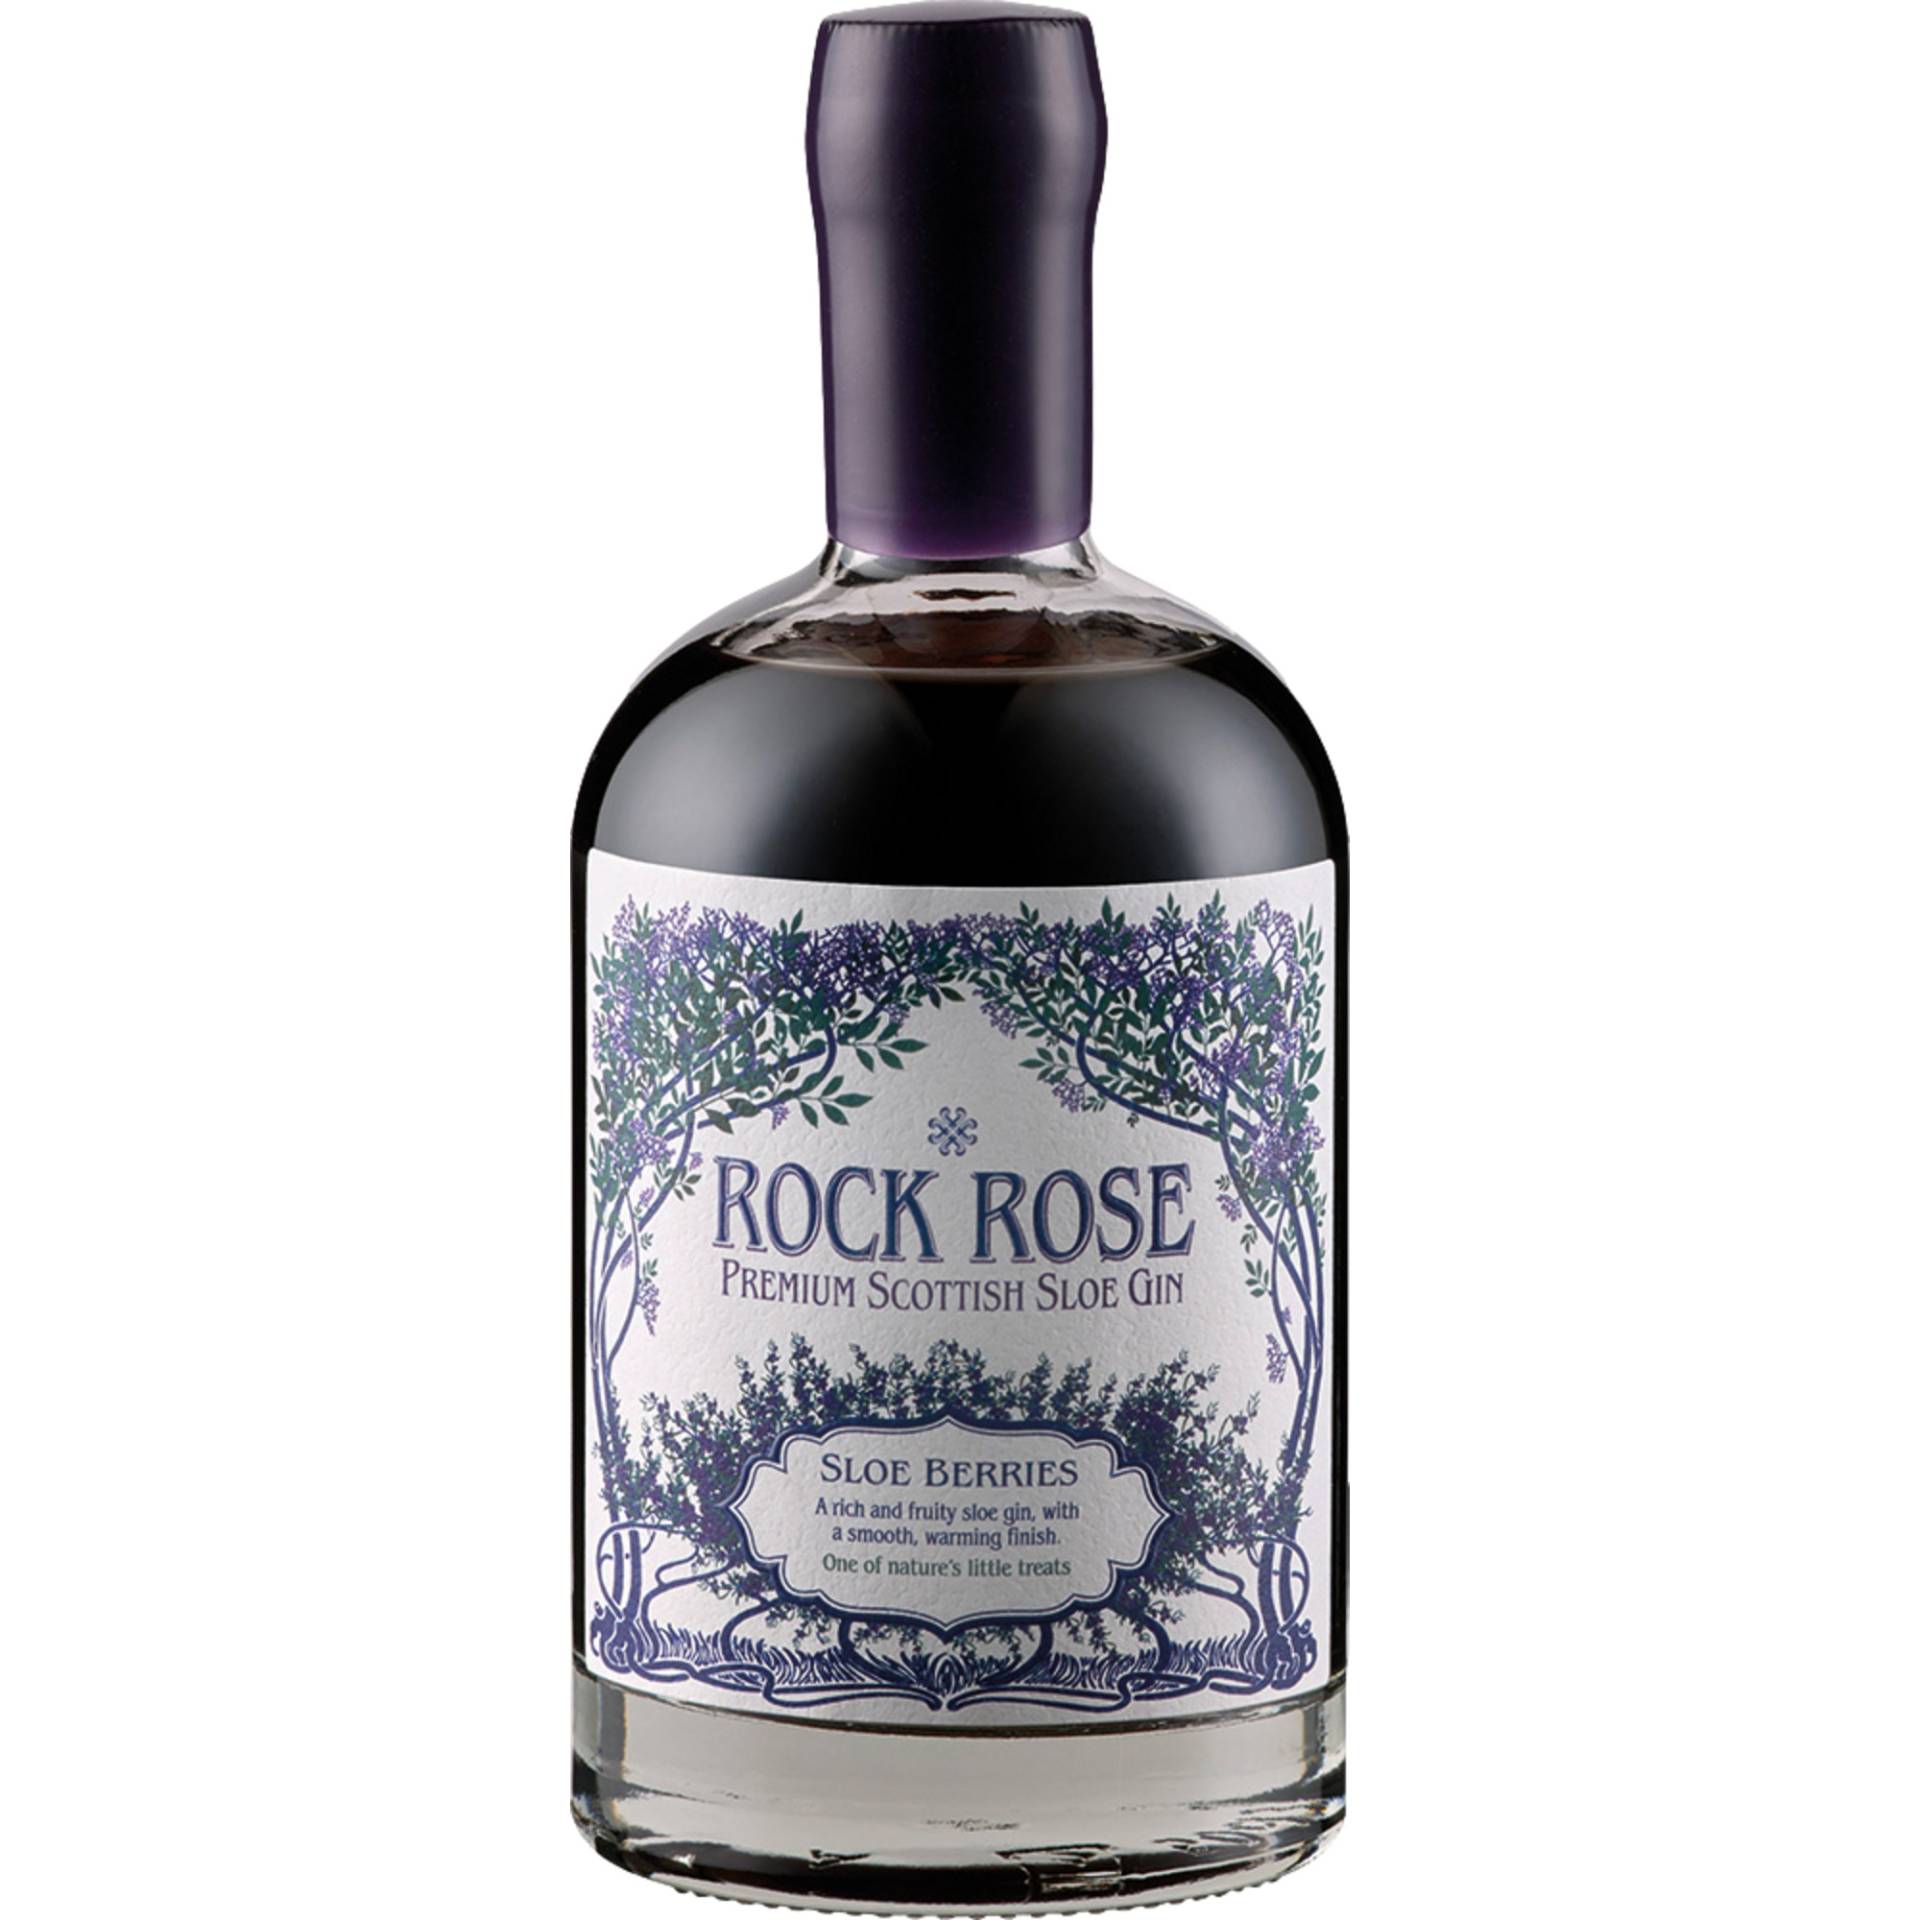 Rock Rose Premium Scottish Sloe Gin, Sloe Berries, 29%, 0,5 L, Schottland, Spirituosen von Dunnet Bay Distillers Ltd. ,   GB KW14 8YD Thurso